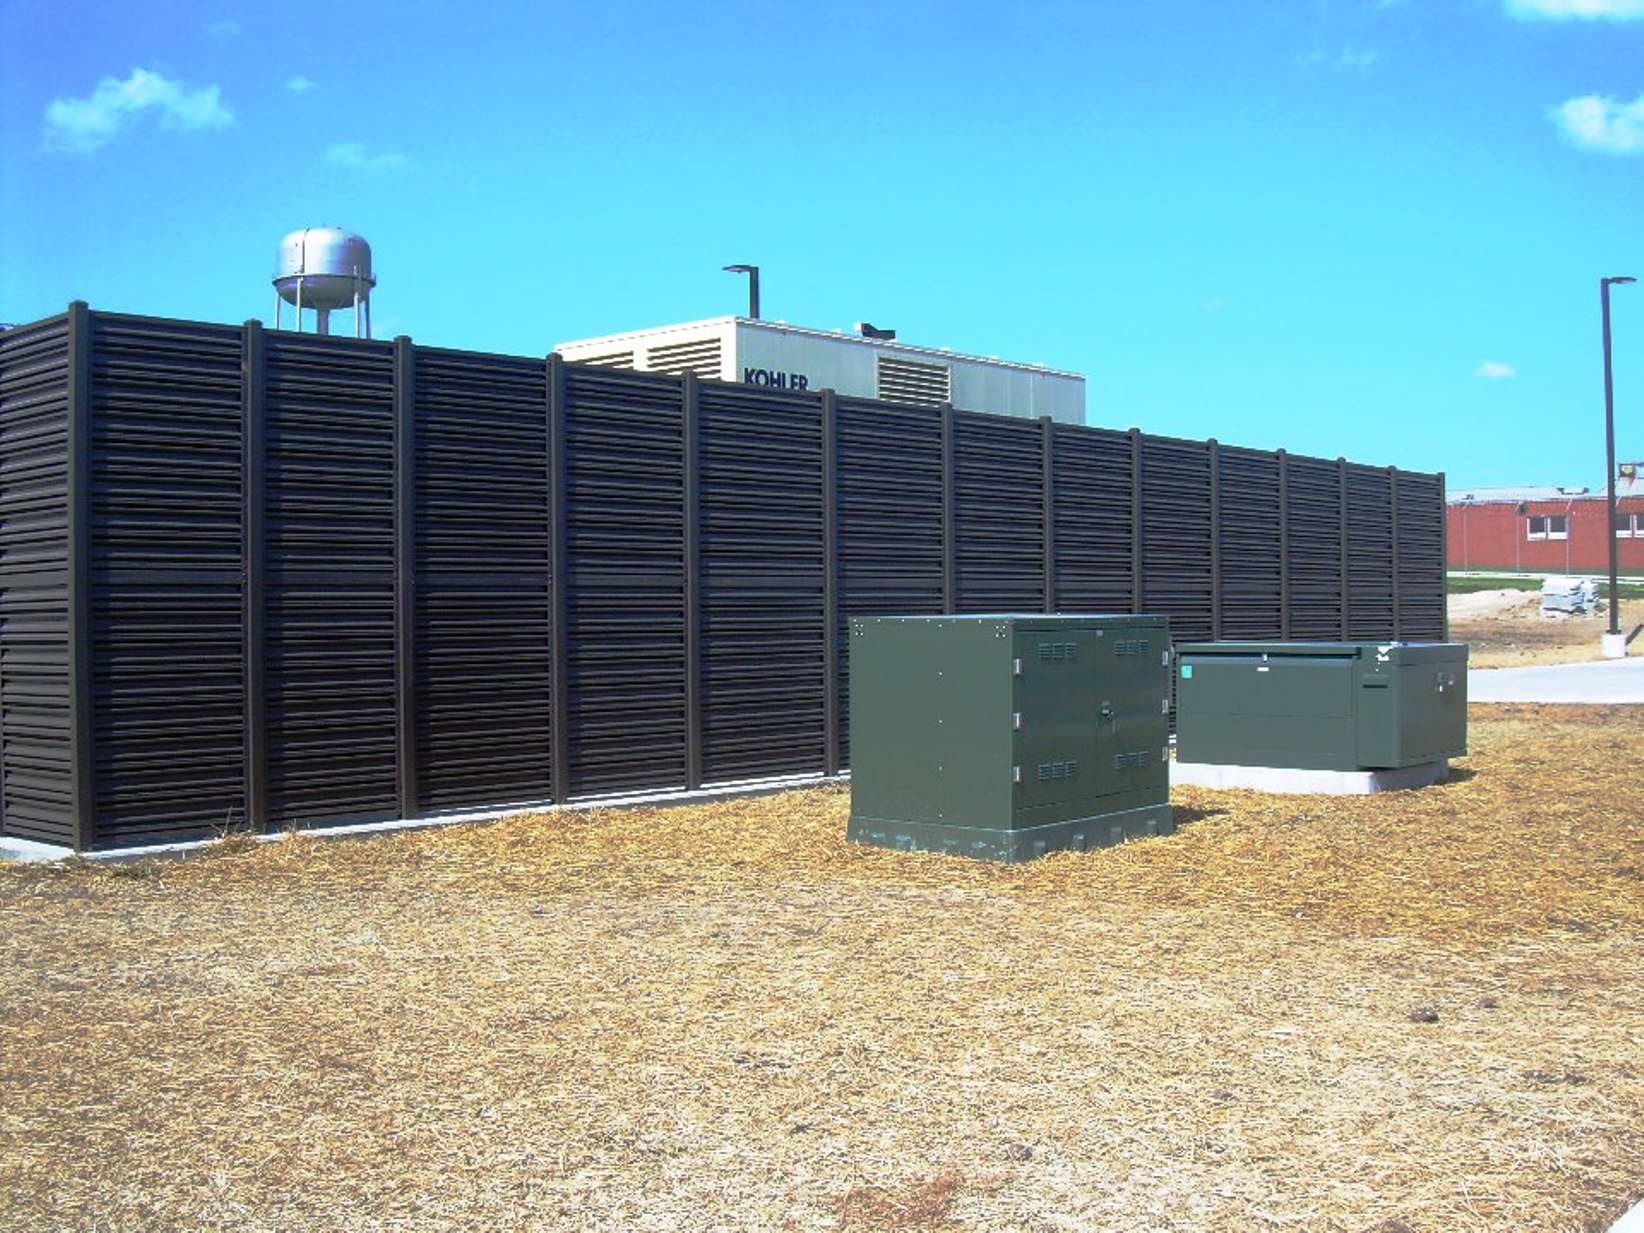 Fulton State Hospital - Fulton, Missouri - aluminum privacy fence